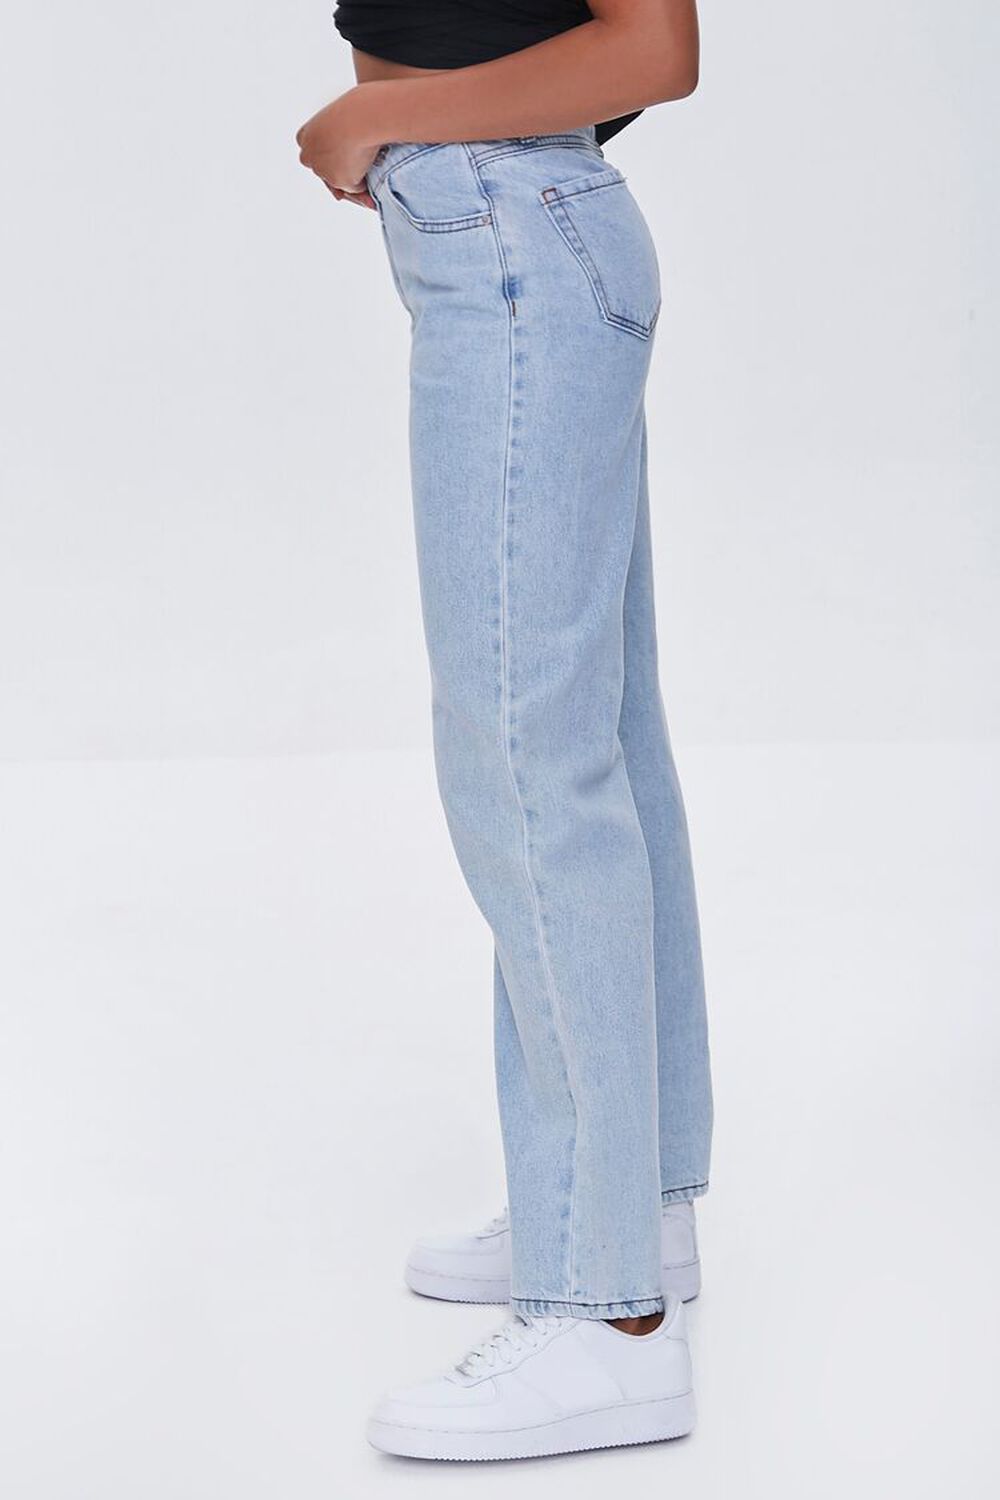 Premium Crisscross 90s-Fit Jeans, image 3